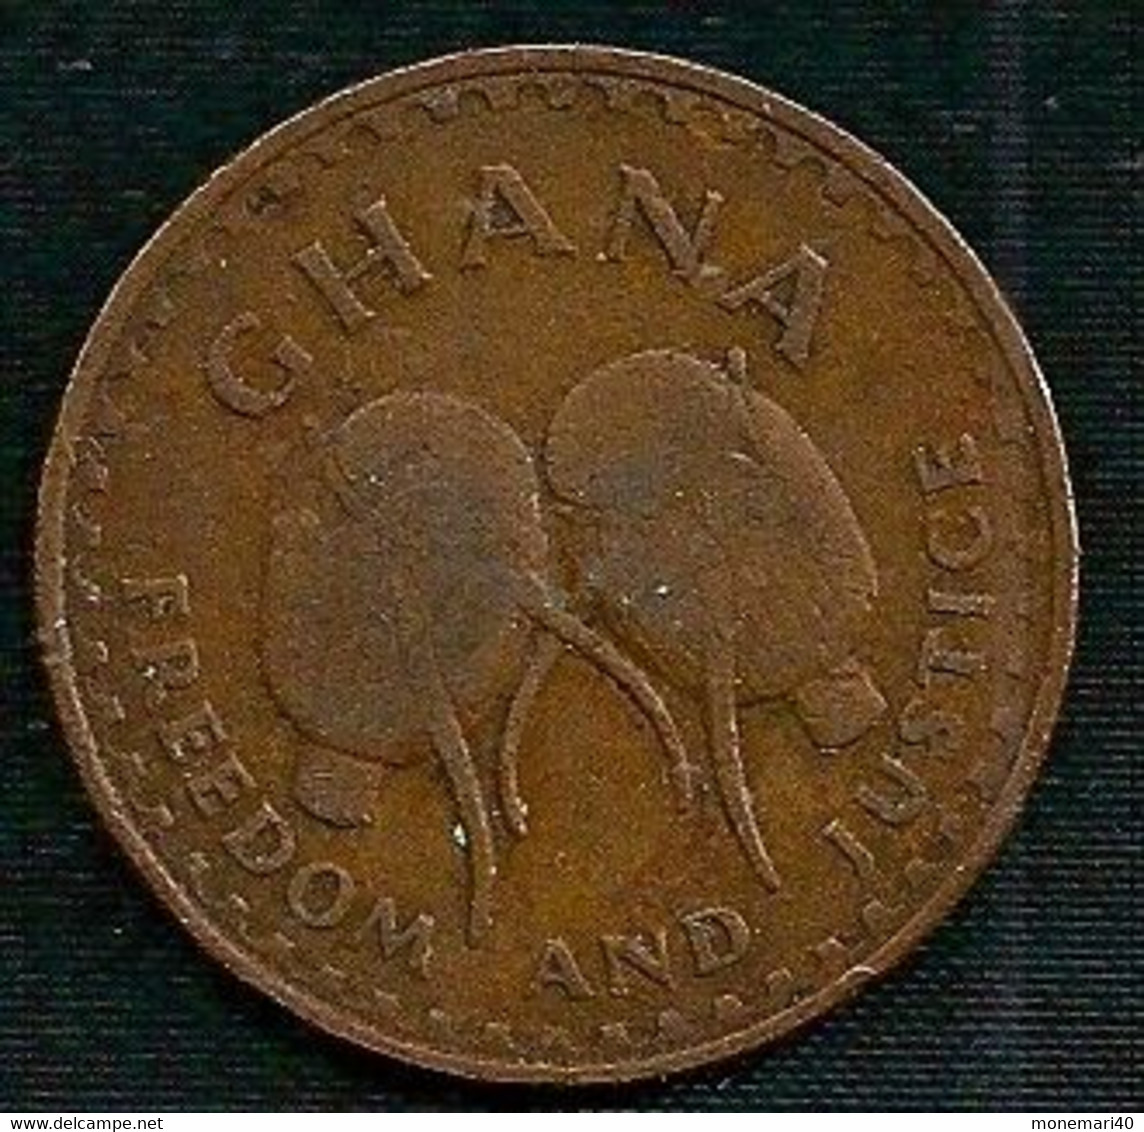 GHANA 1 PESEWA - 1967 - Ghana